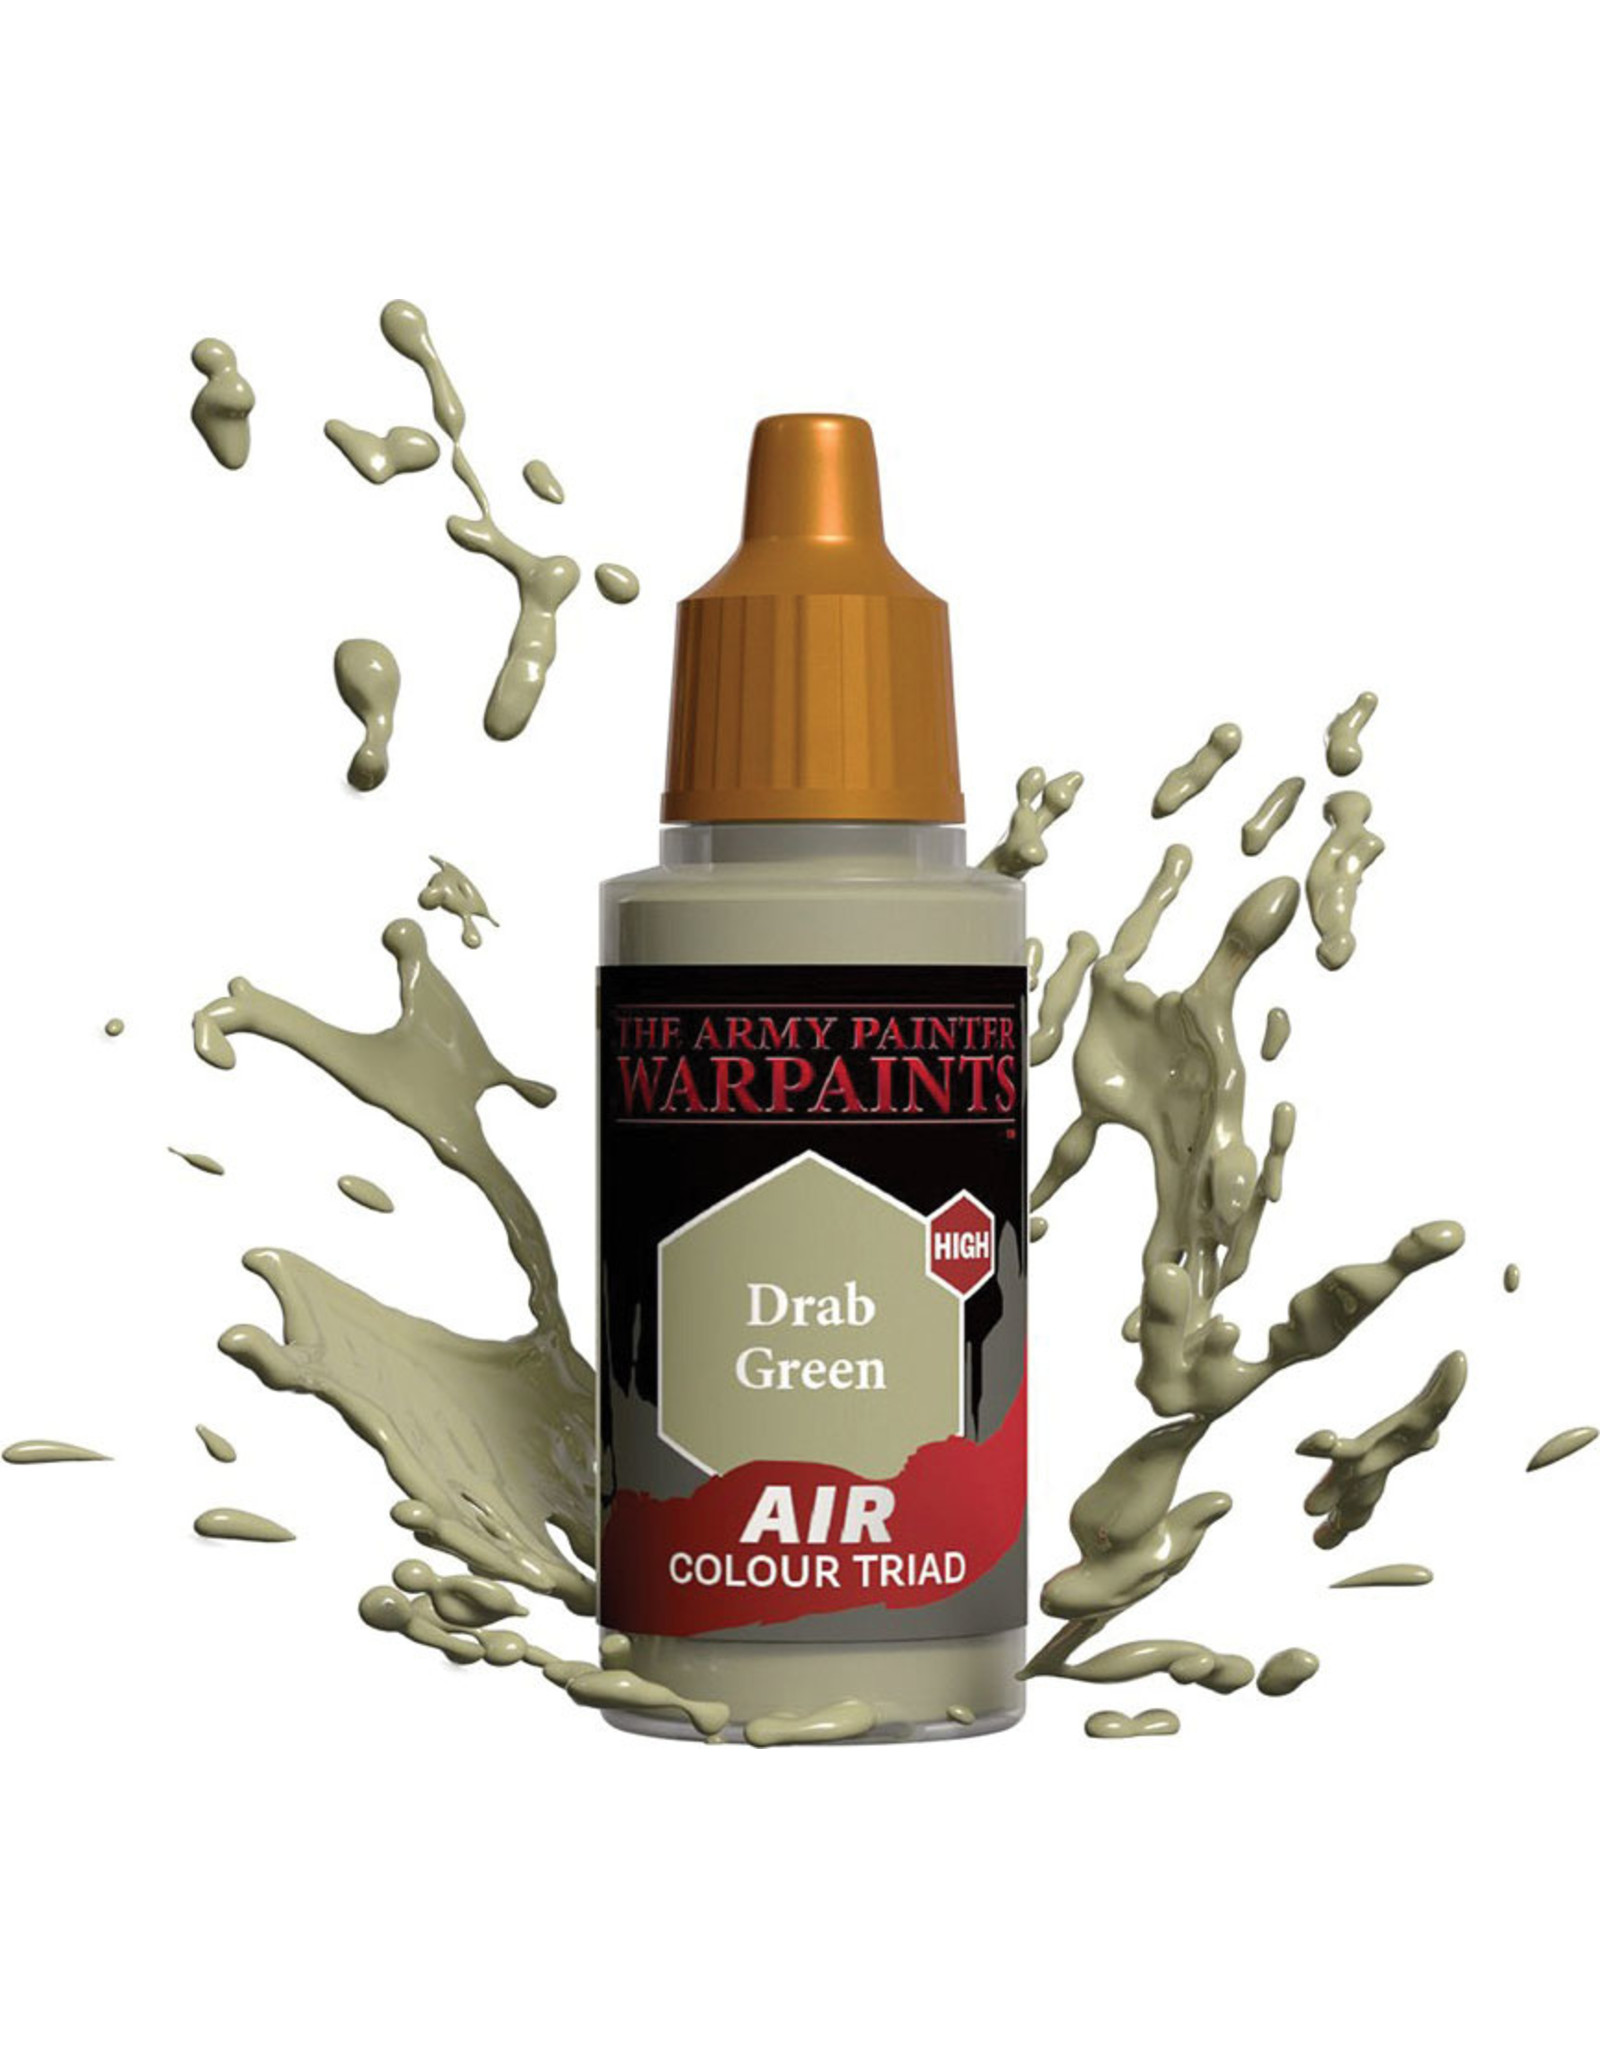 Army Painter Warpaint Air: Drab Green, 18ml.